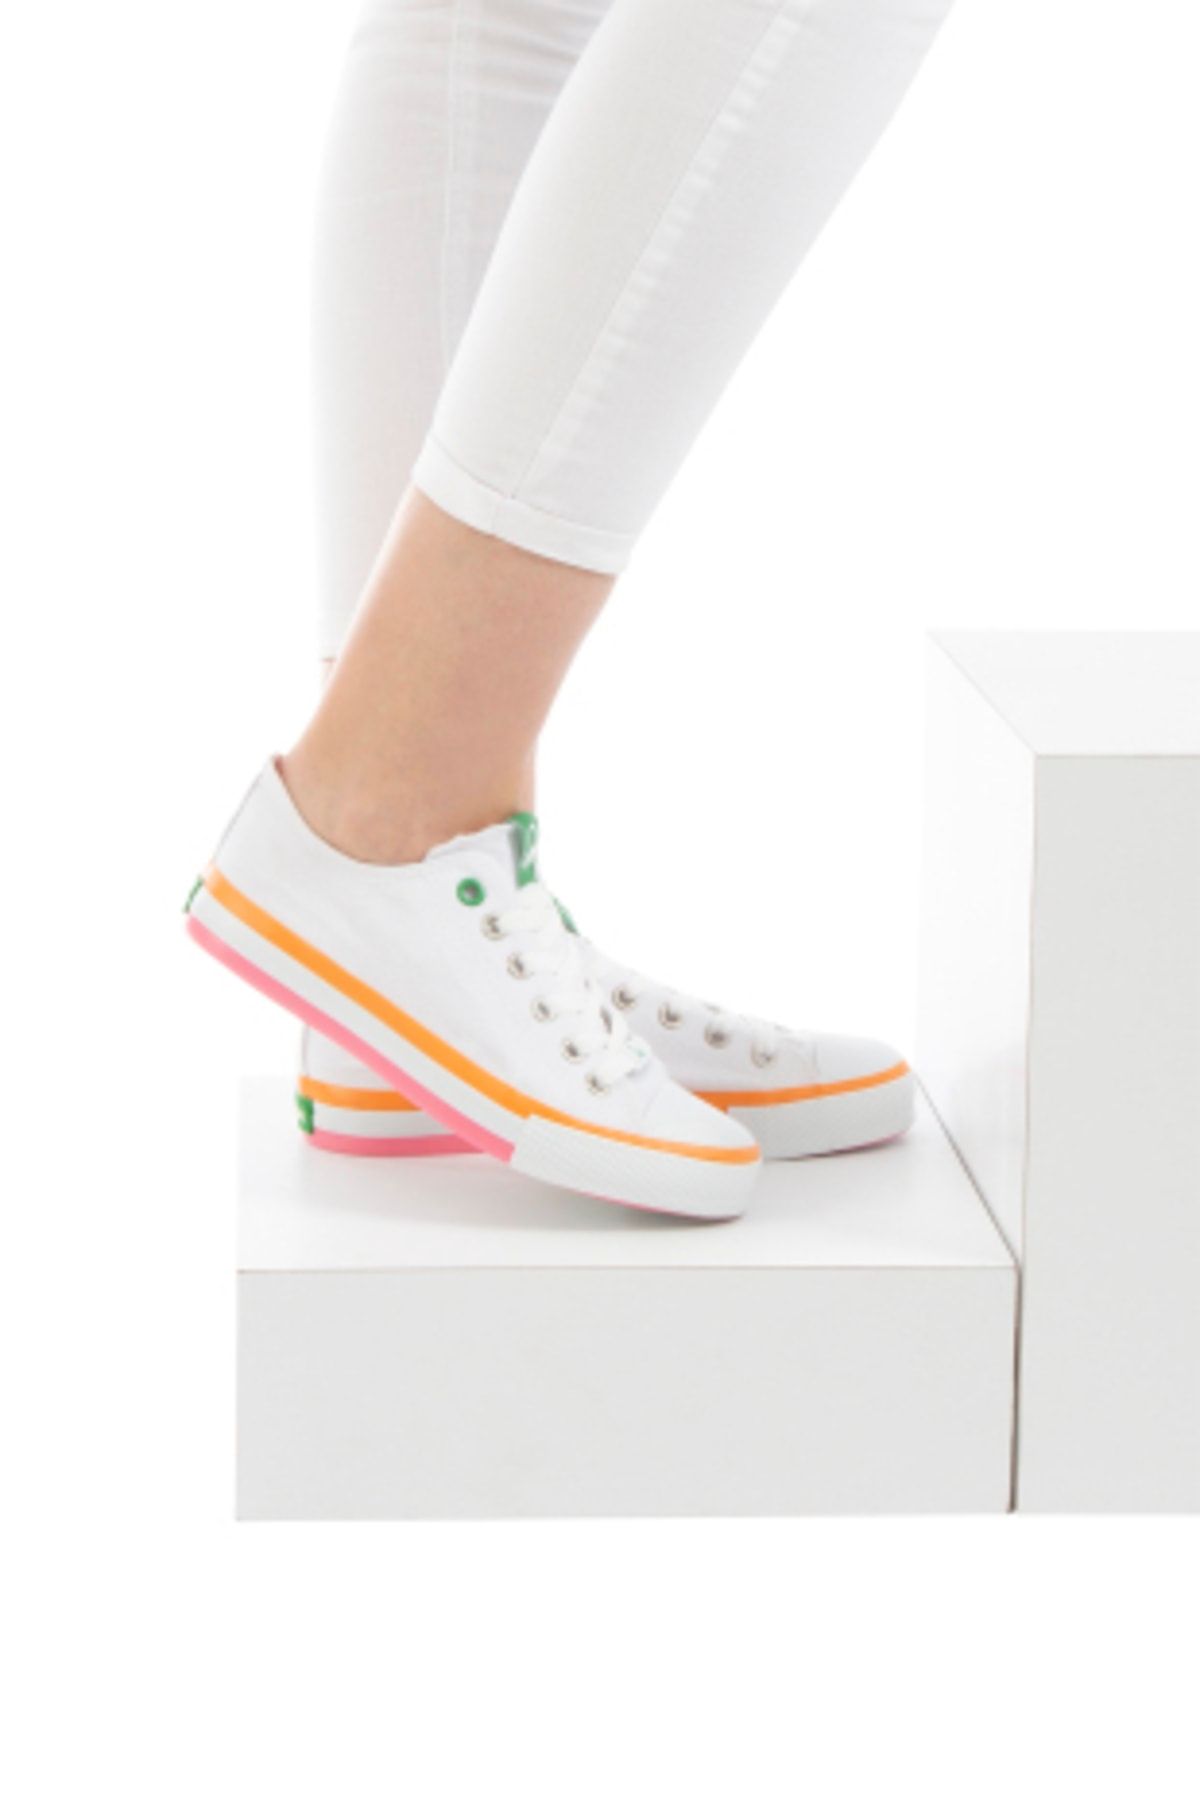 Benetton Kadın Beyaz Spor Ayakkabı